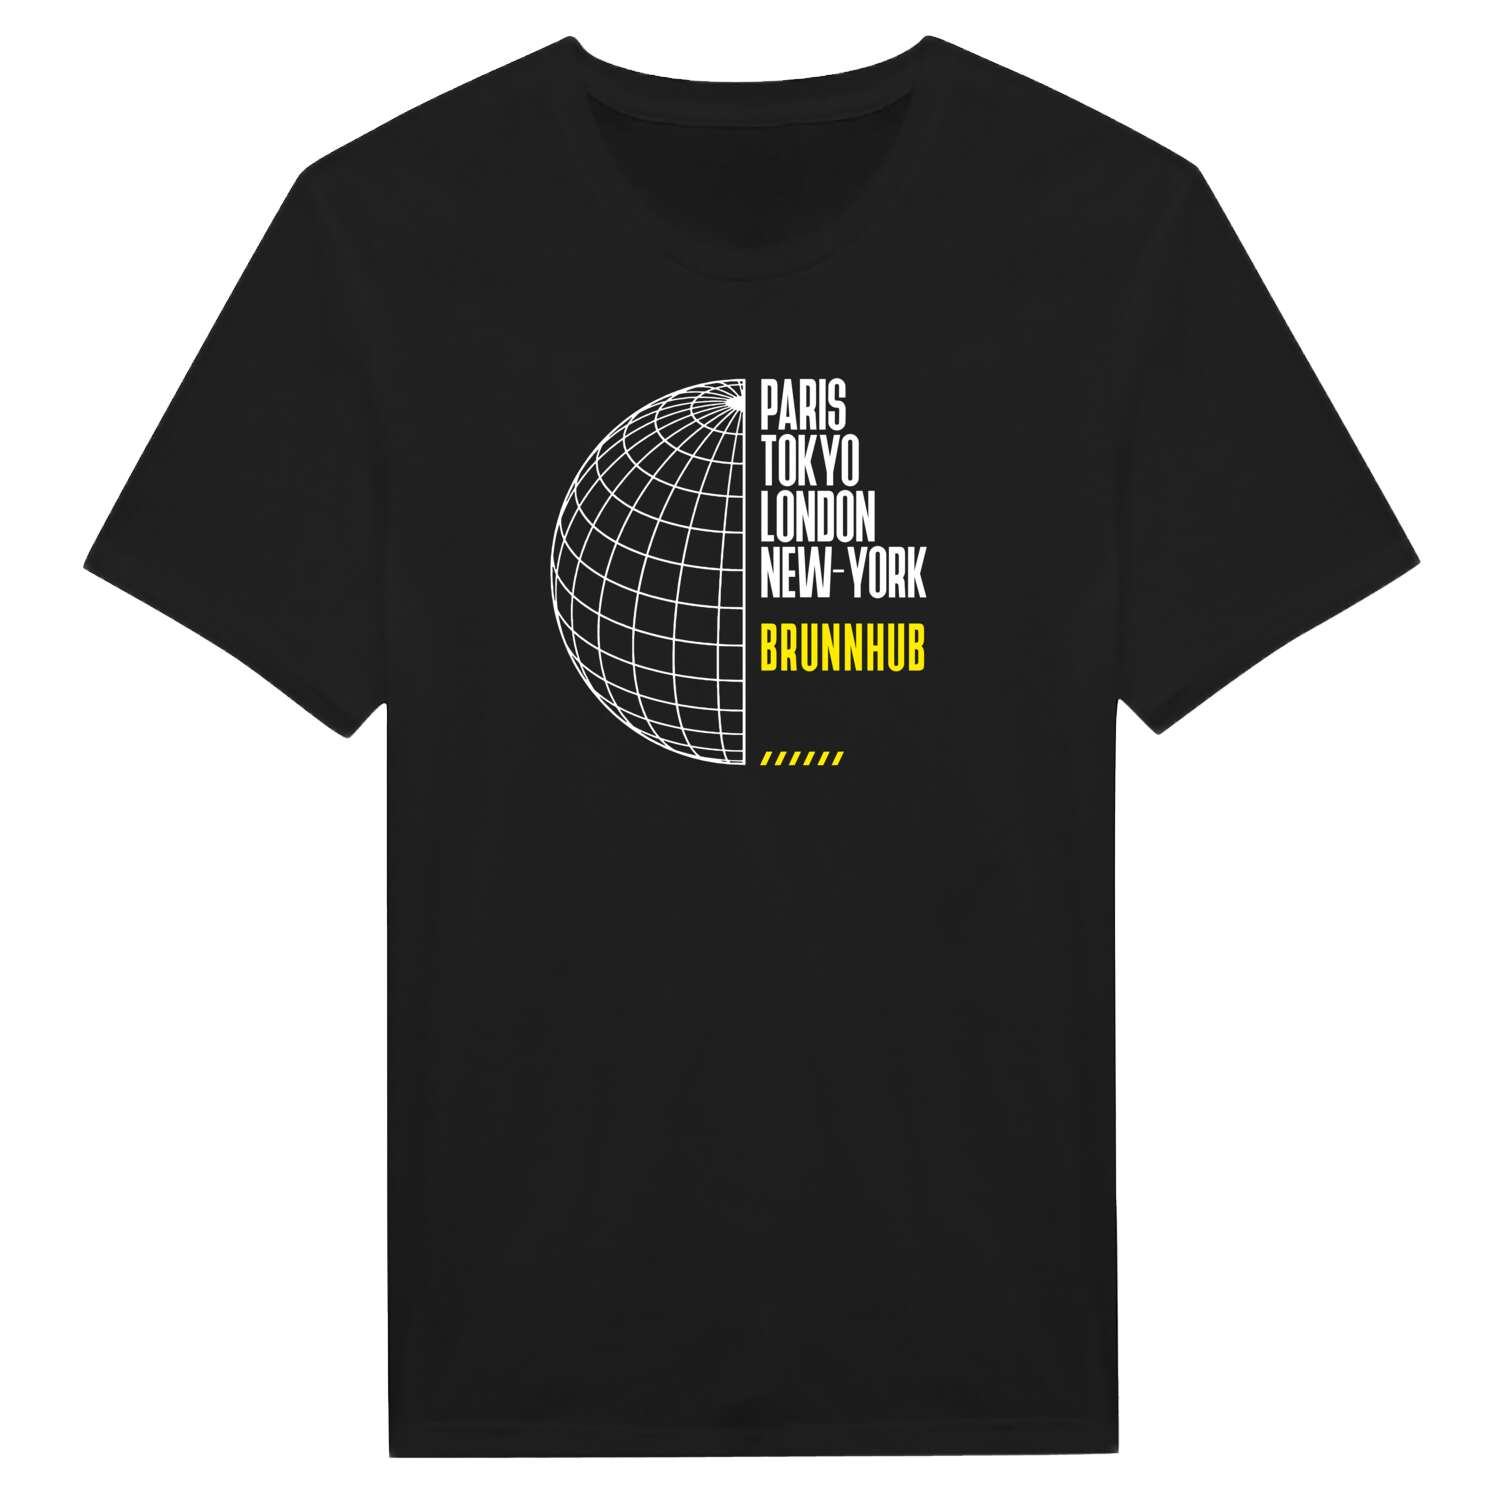 Brunnhub T-Shirt »Paris Tokyo London«